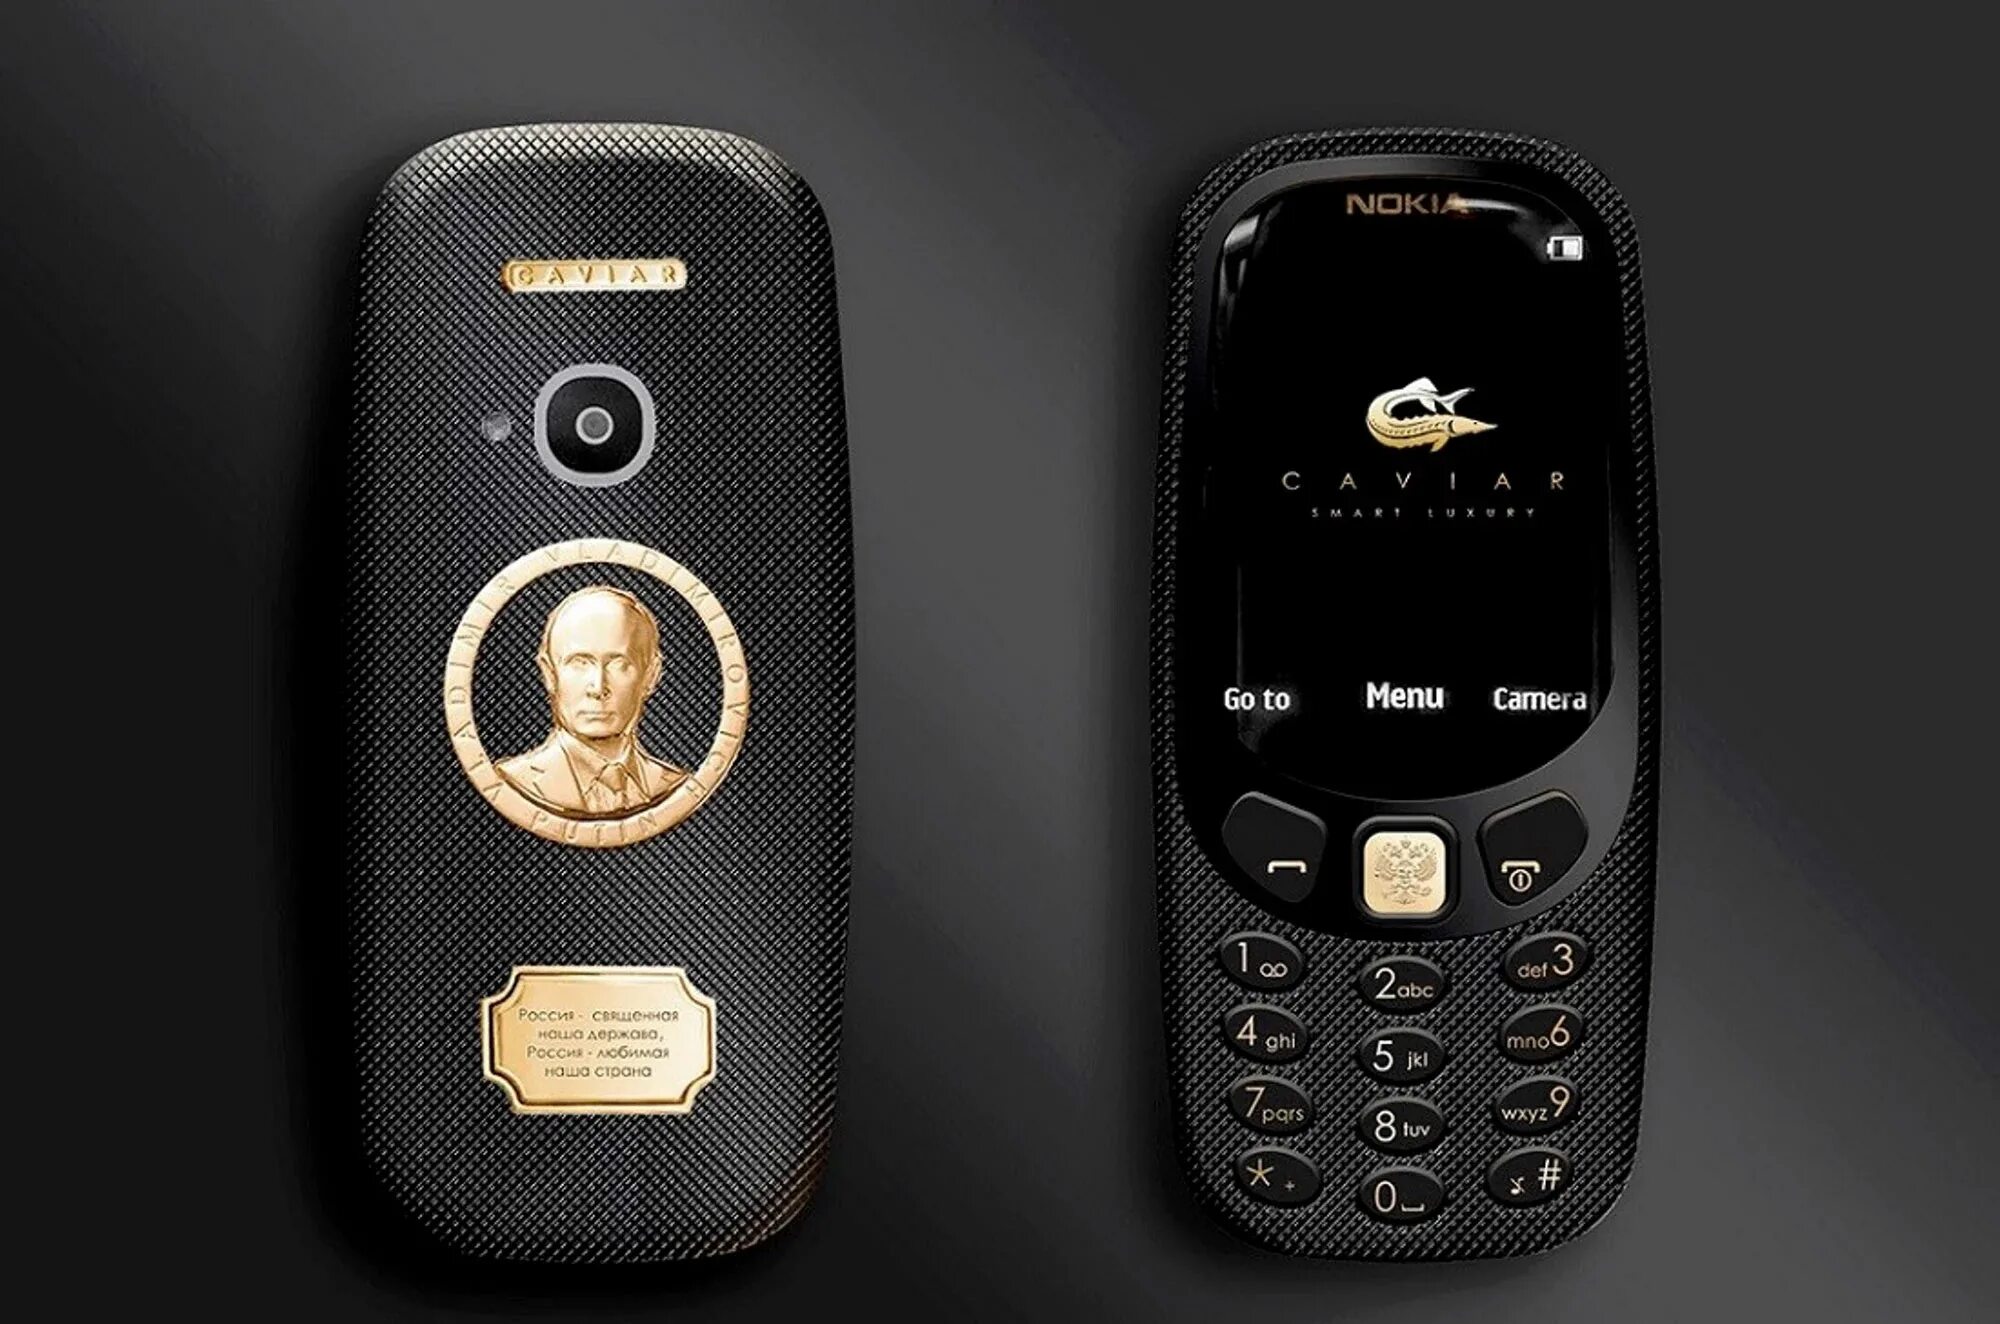 Золотой нокиа 3310. Nokia 3310 Gold. Nokia 3310 Gold Edition. Нокиа 3310 в титановом корпусе. Фото российских телефонов